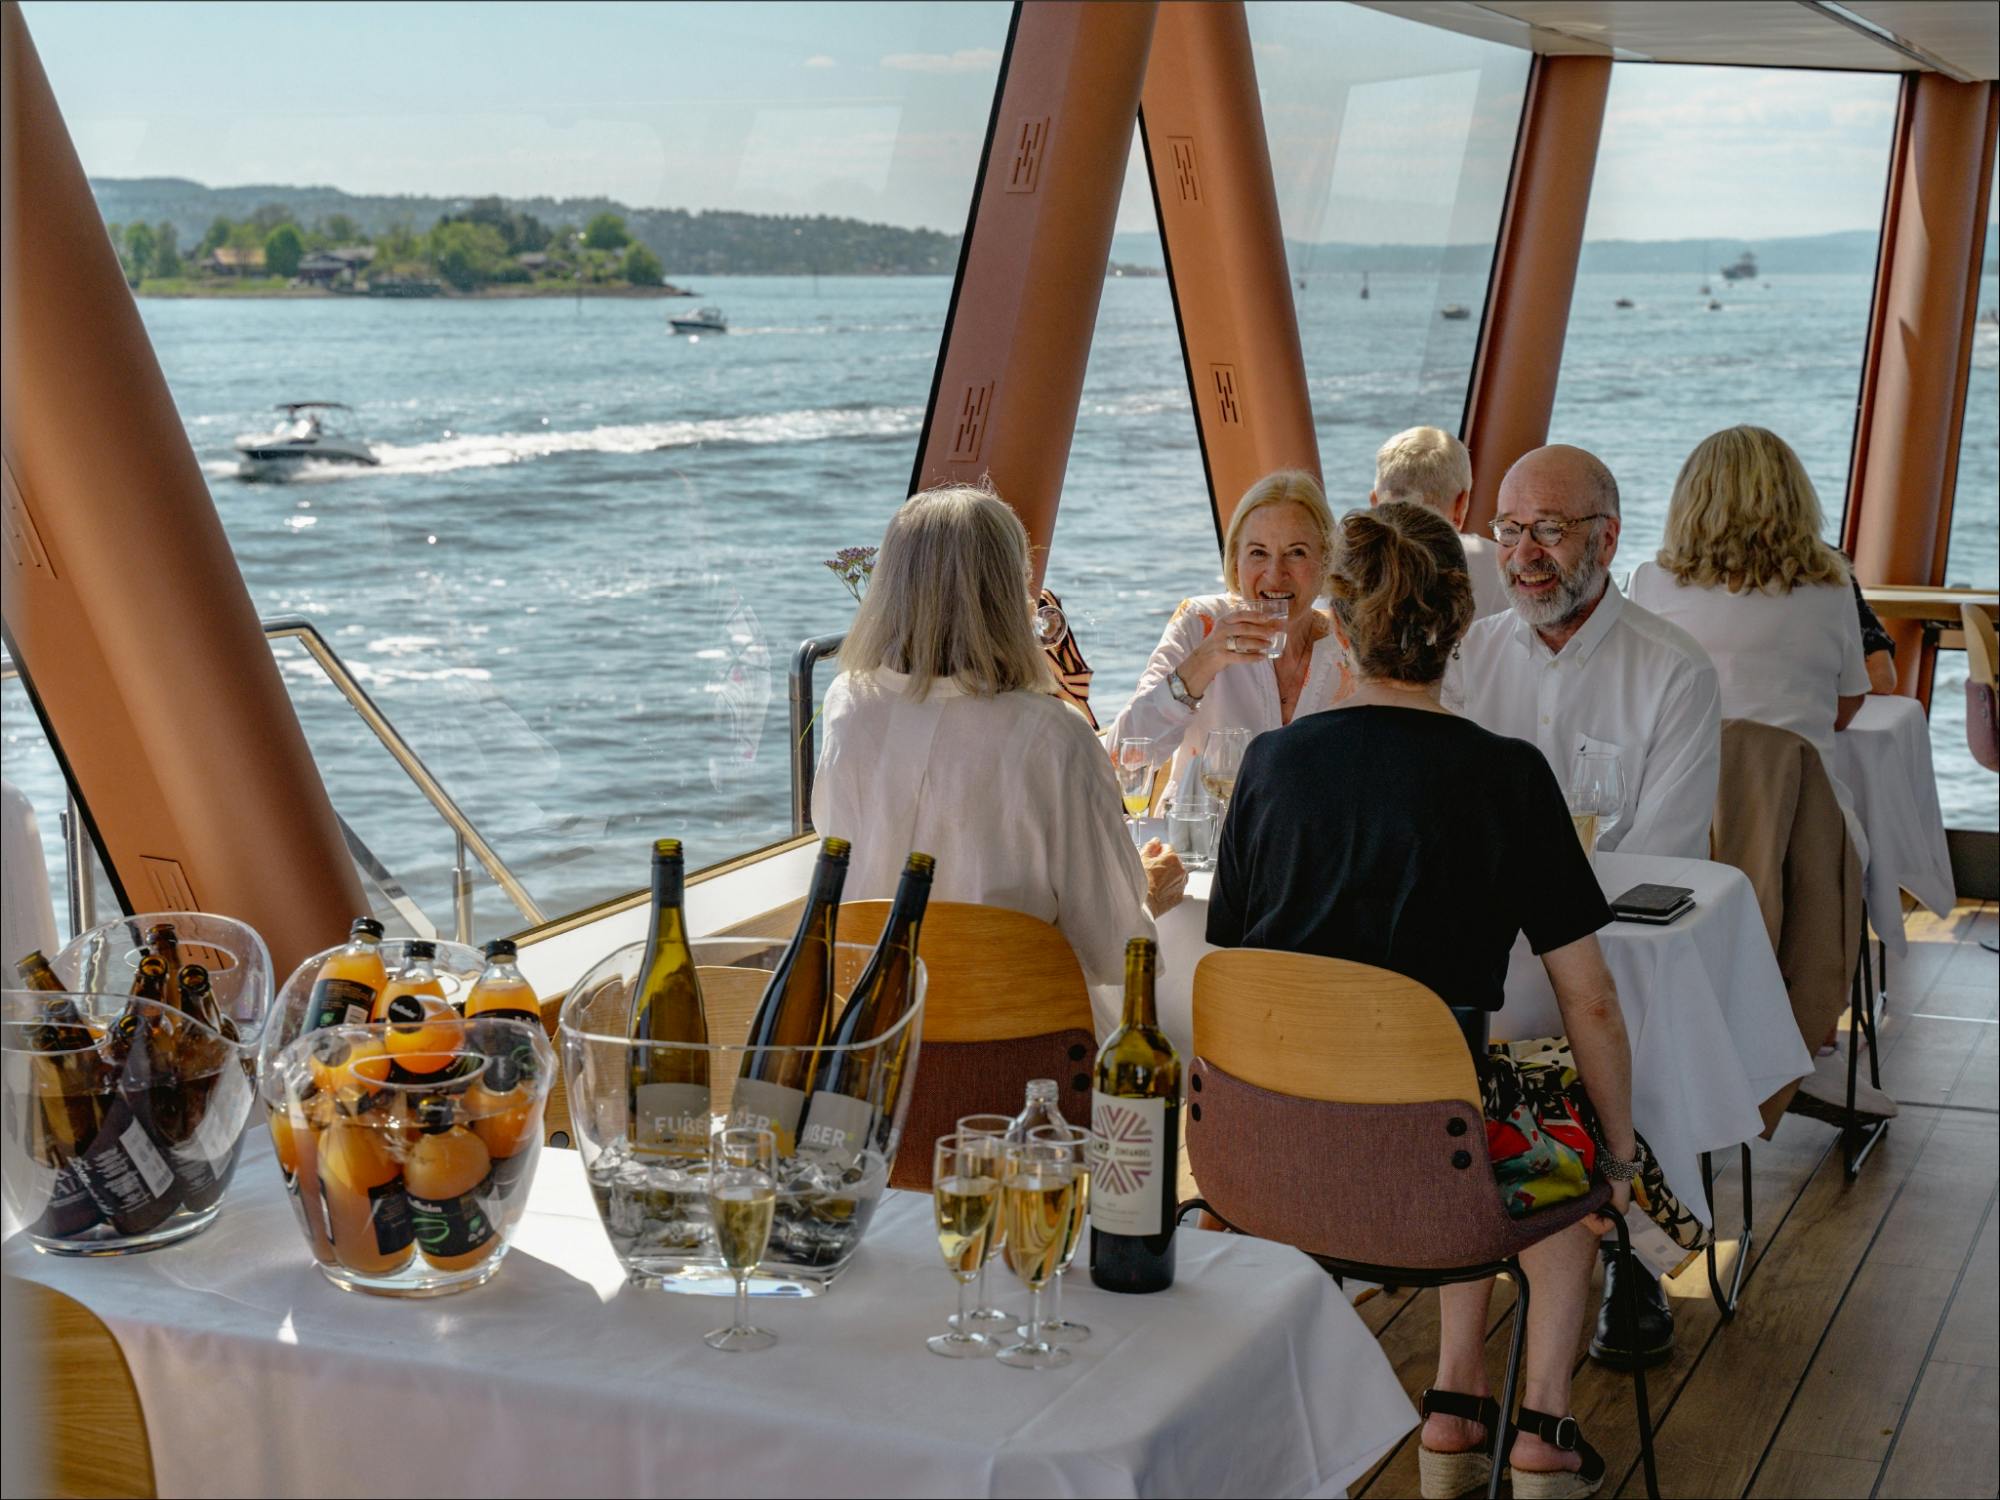 Crucero "Brunch and bubbles" por el fiordo de Oslo con brunch